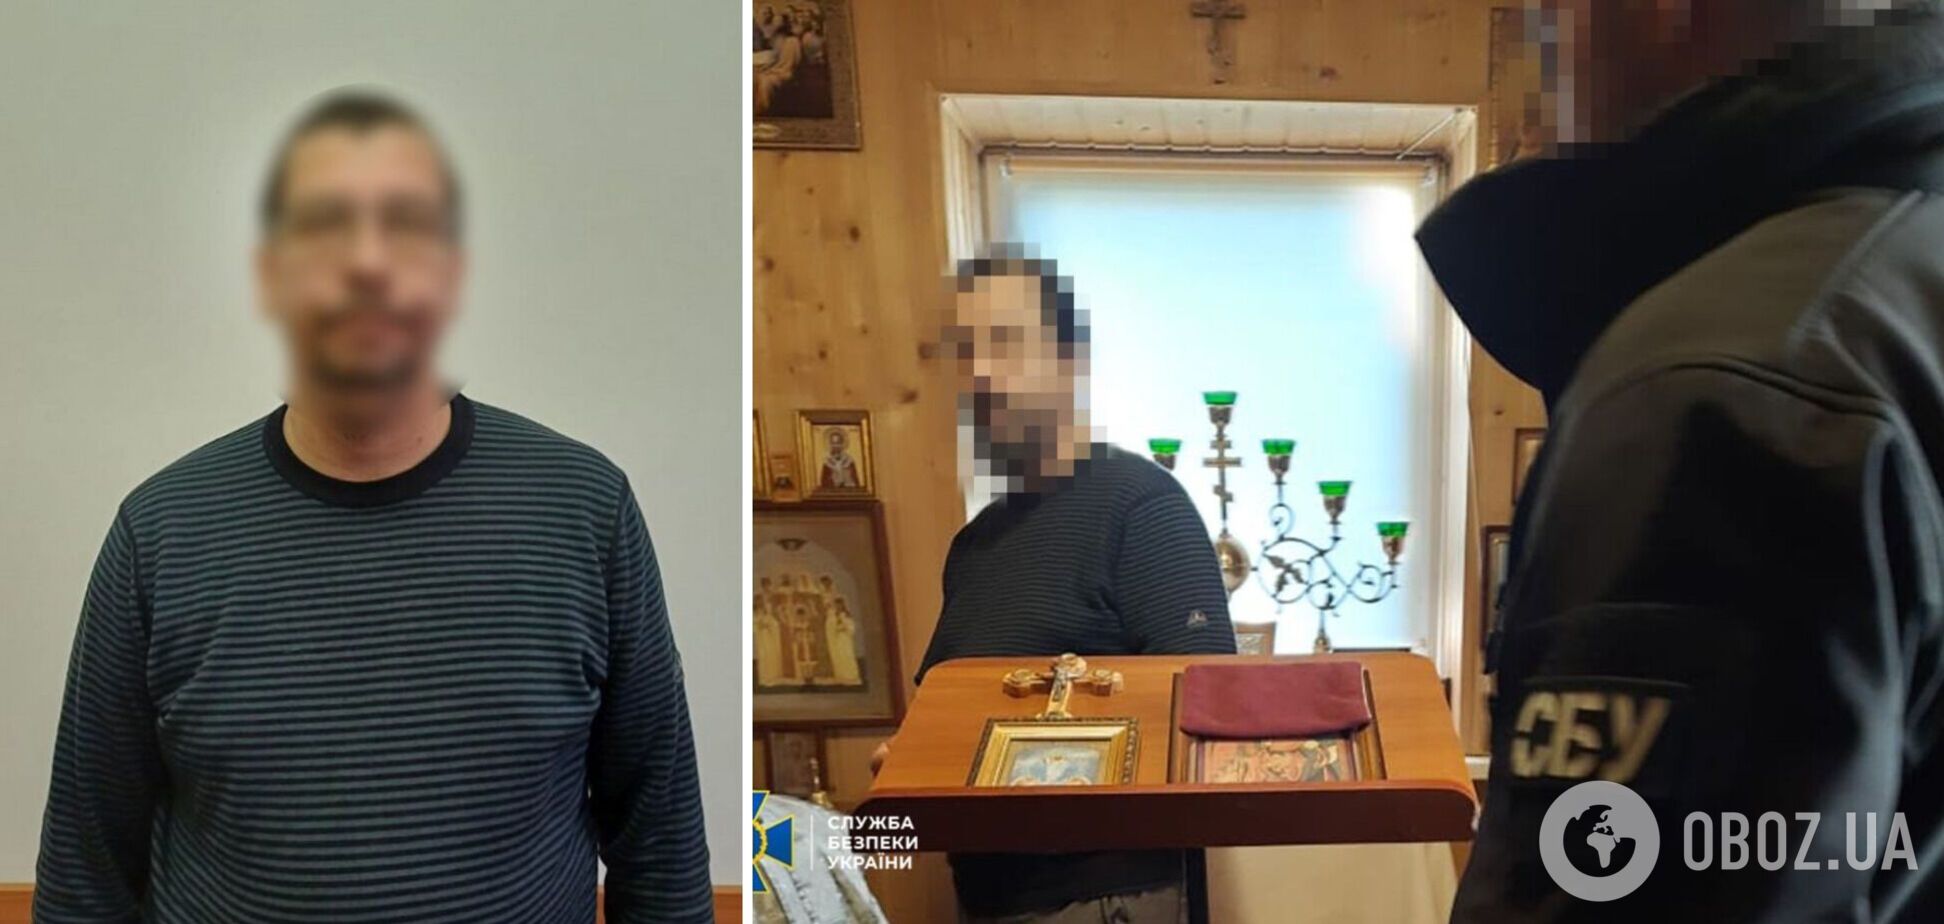 СБУ сообщила о подозрении настоятелю храма УПЦ МП, восхвалявшему террористов Захарченко, Гиви и Моторолу. Фото